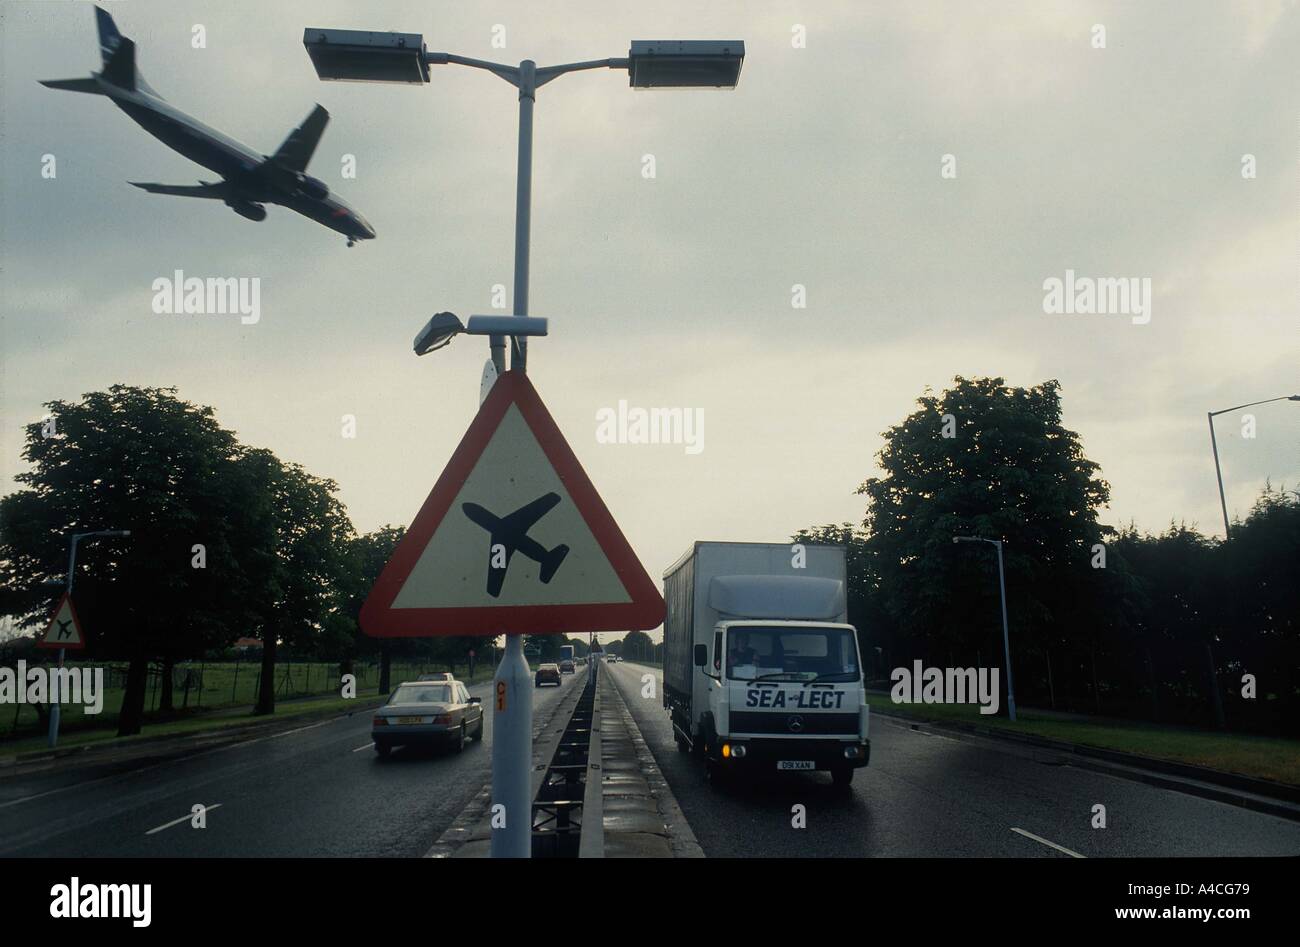 Kommen, um am Flughafen London Heathrow landen Flugzeuge fliegt über einer viel befahrenen Hauptstraße ein Schild Warnung niedrig fliegende Flugzeuge Stockfoto